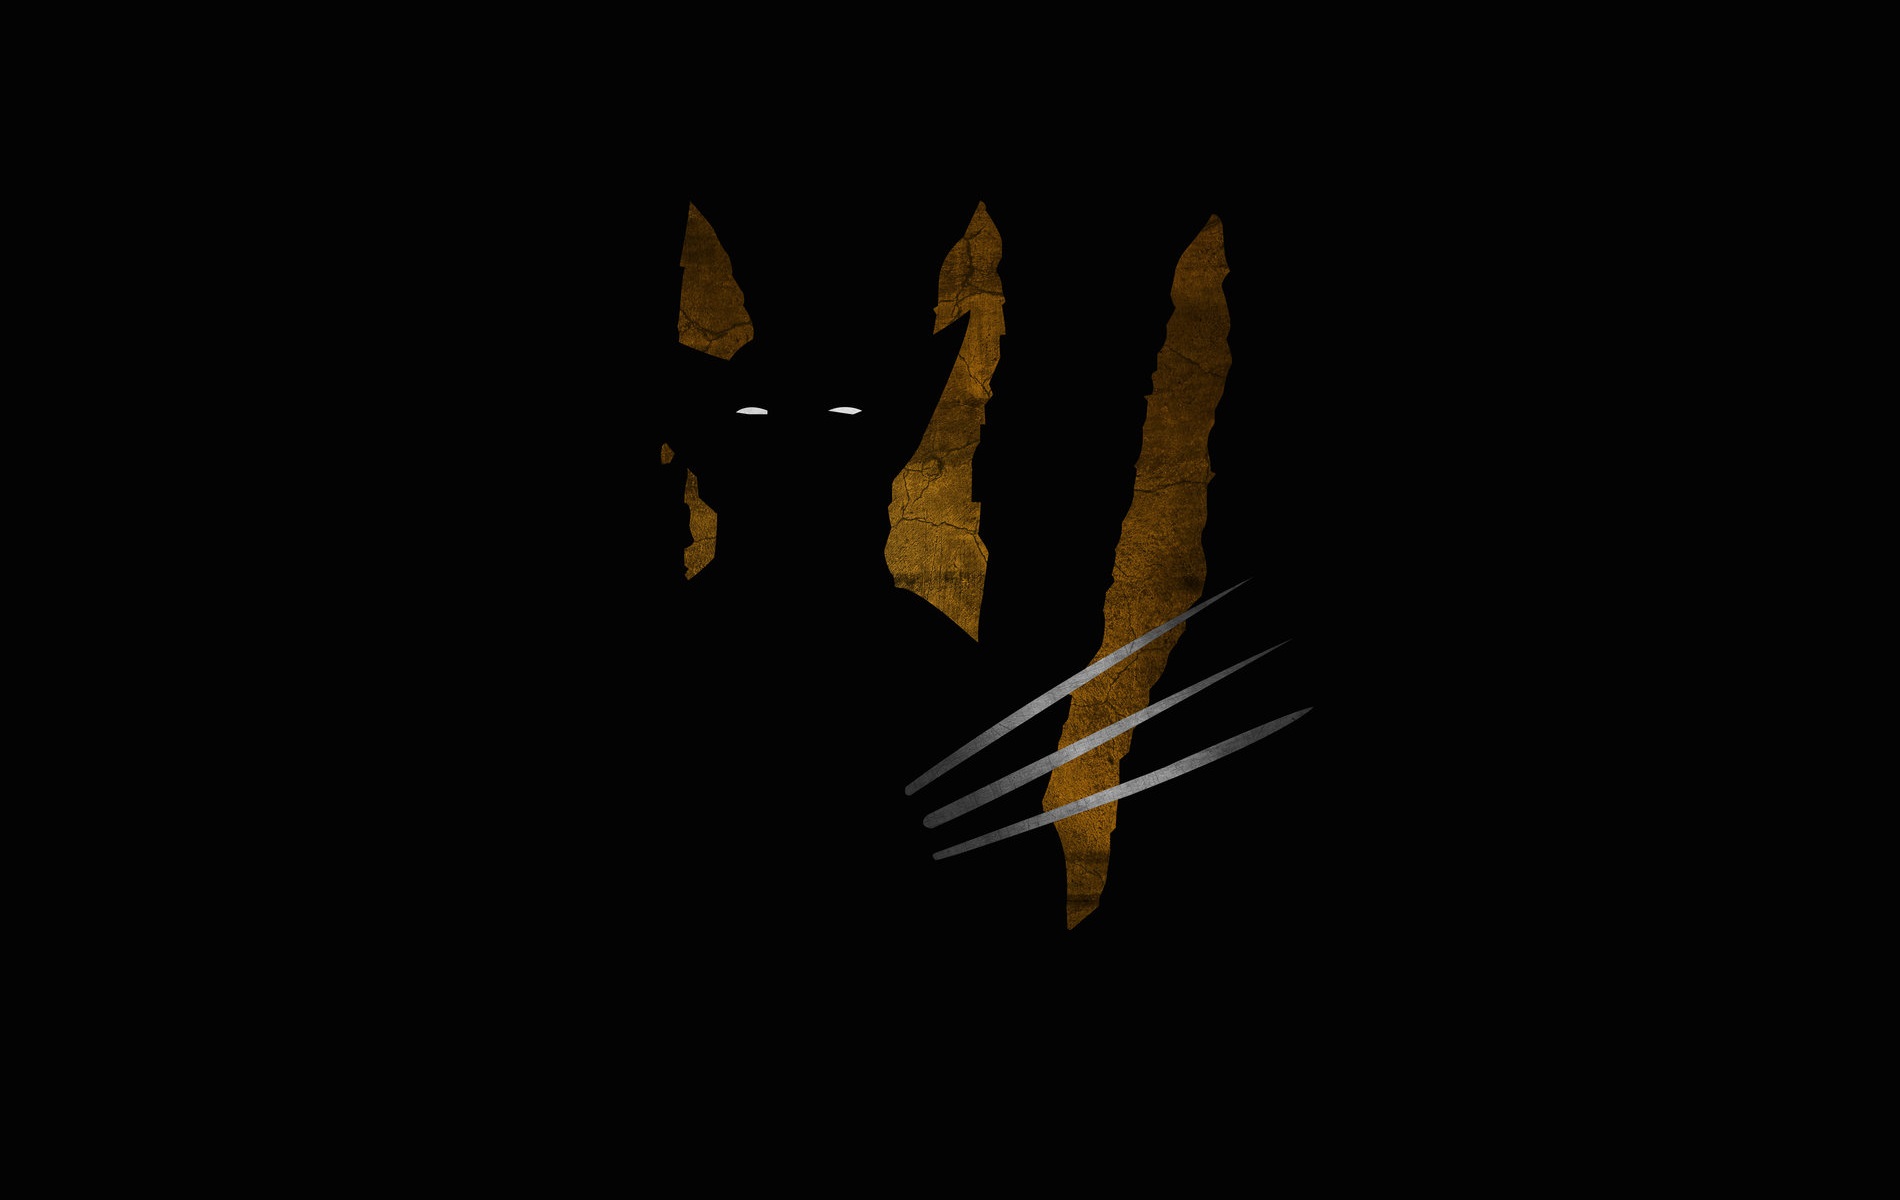 Wolverine Puter Wallpaper Desktop Background Id